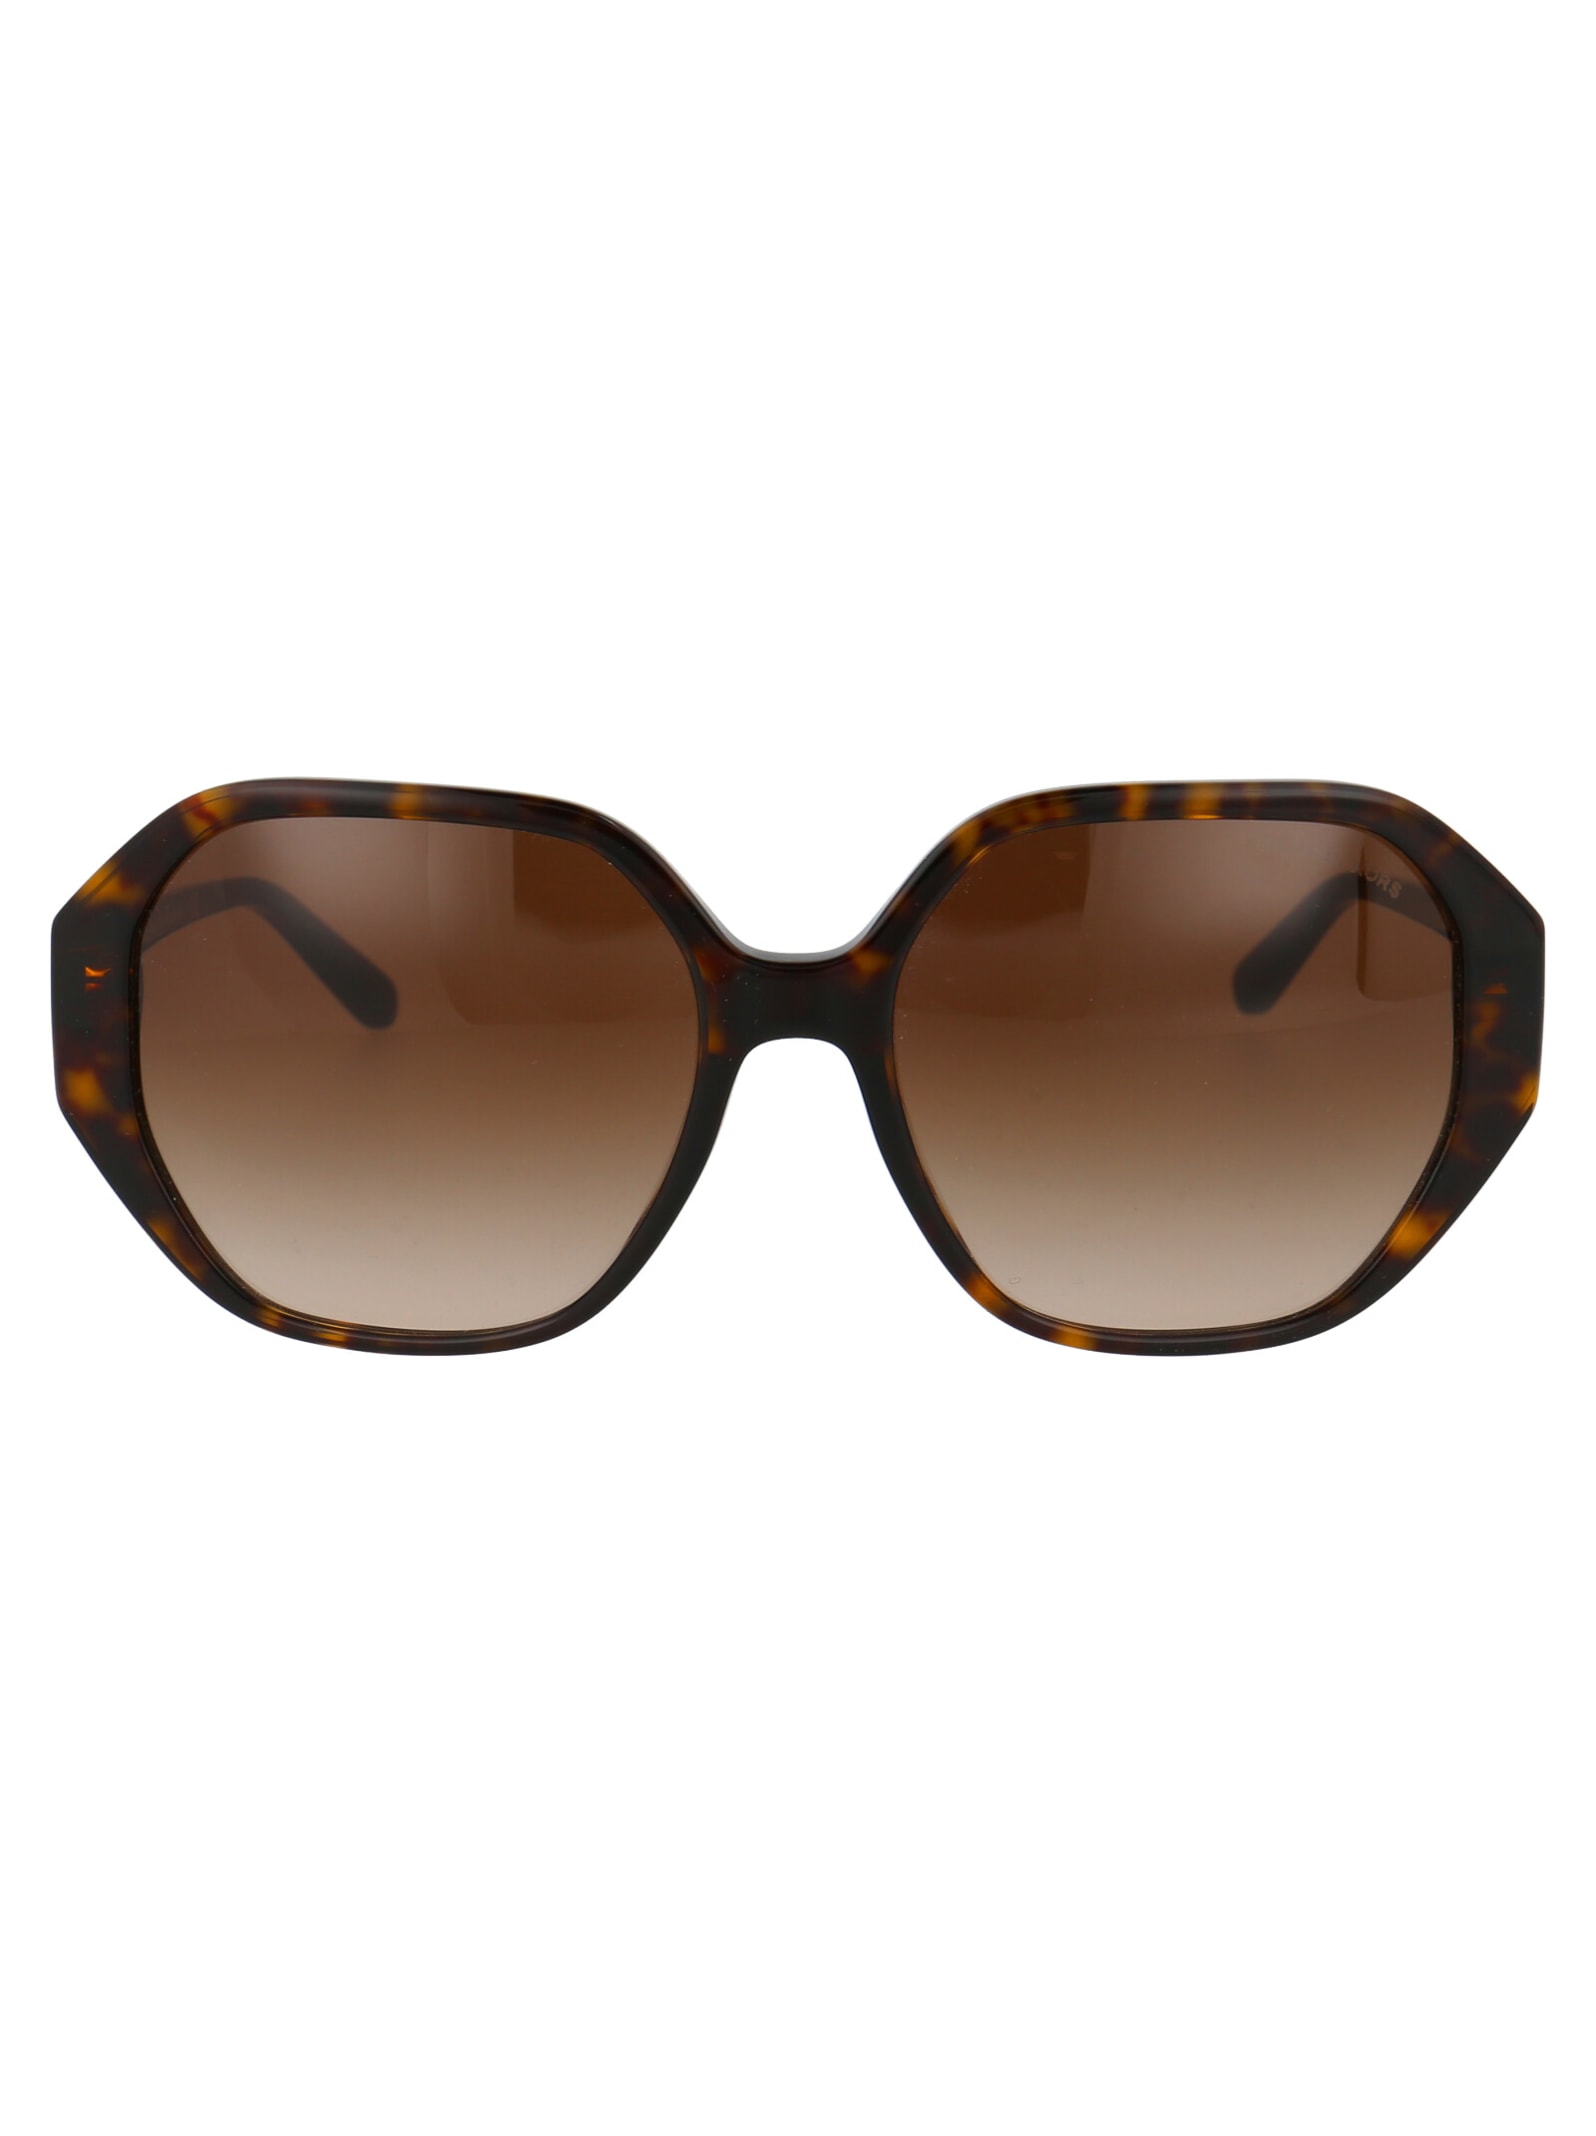 Michael Kors 0mk2138u Sunglasses